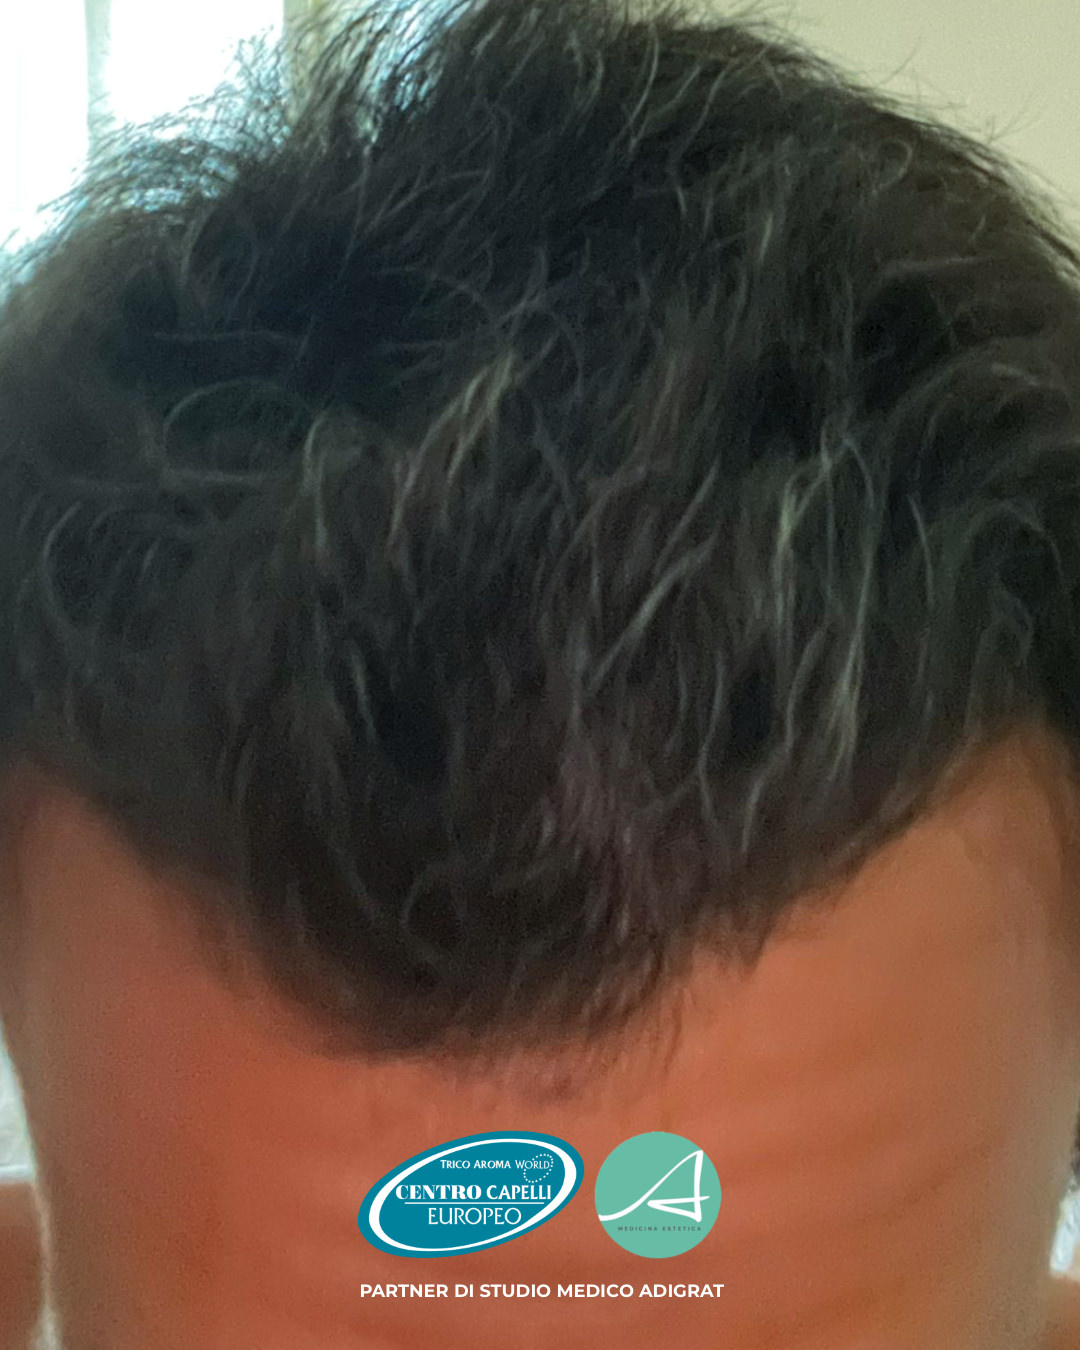 Foto testimonianza del dopo di un trapianto capelli FUE effettuato dallo Studio Medico Adigrat con il Centro Capelli Europeo a Milano